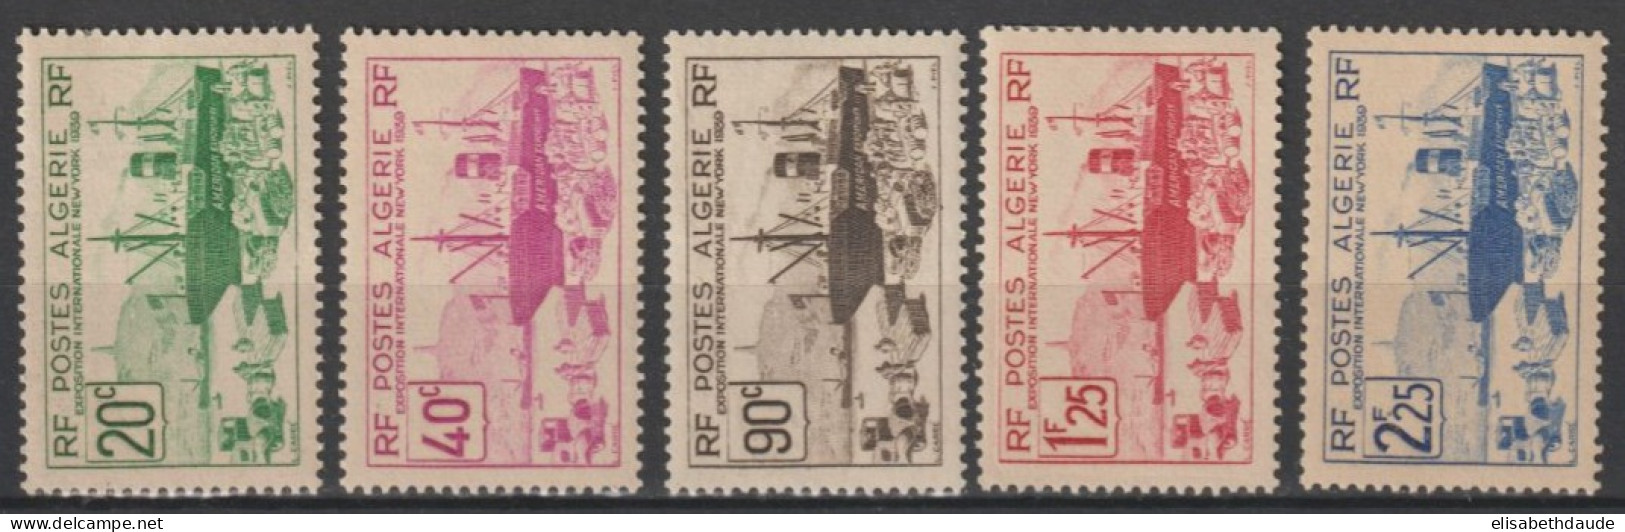 ALGERIE - 1939 - YVERT N° 153/157 SERIE COMPLETE ** MNH (156 * MLH) - COTE 2022 = 24.5 EUR. - - Neufs